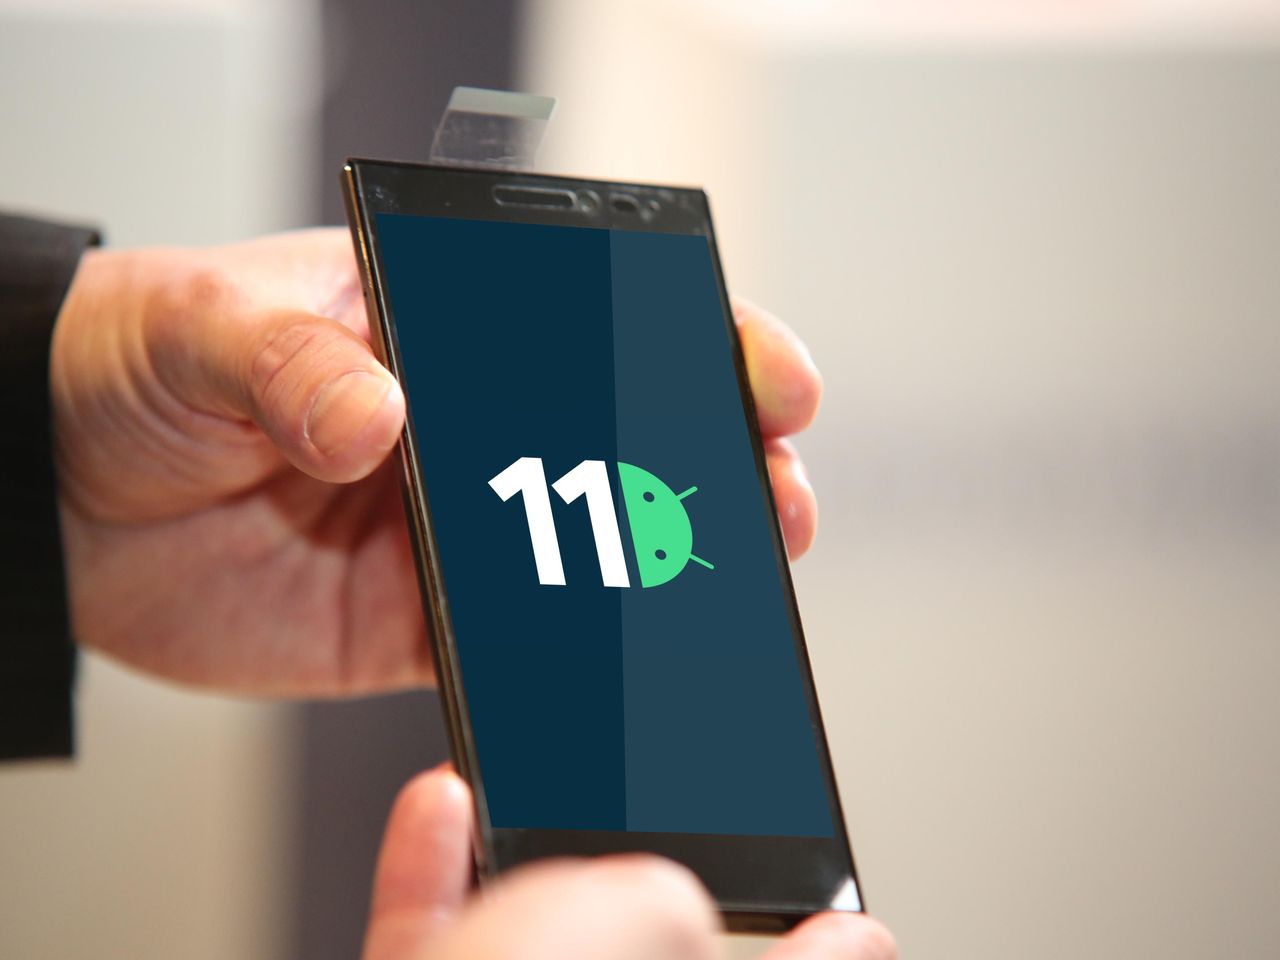 Na Androida 11 raczej sobie poczekasz. Ale spokojnie, i tak nie bardzo jest na co